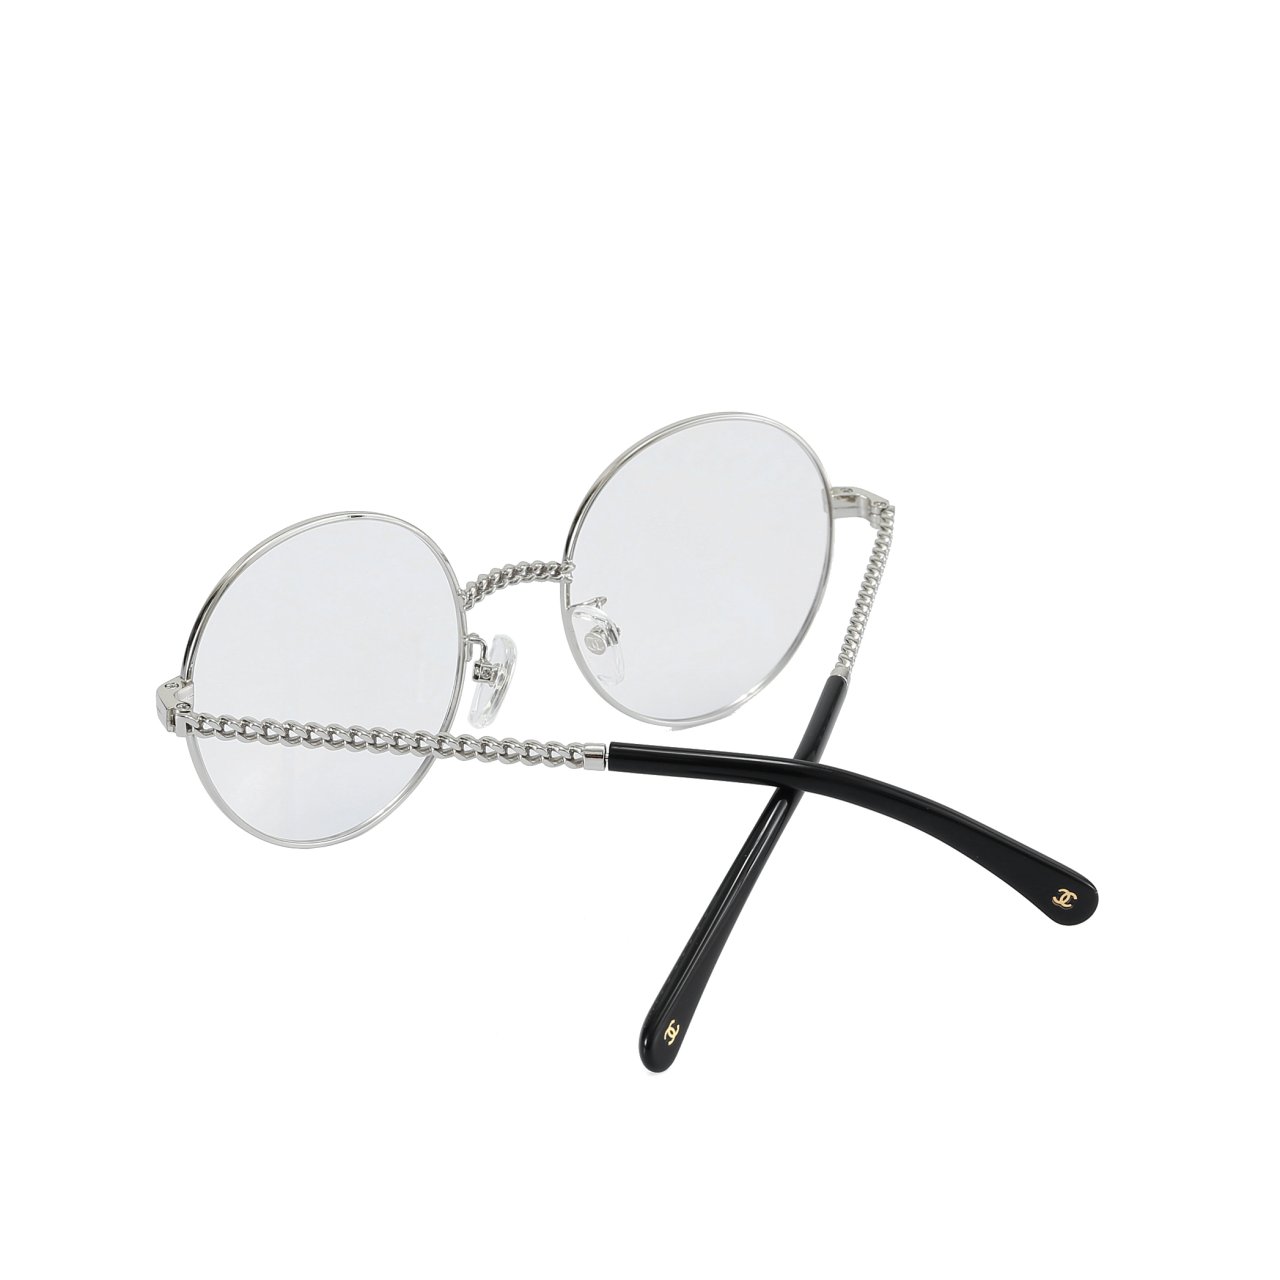 샤넬-안경줄-제니-안경2186c395-명품 레플리카 미러 SA급